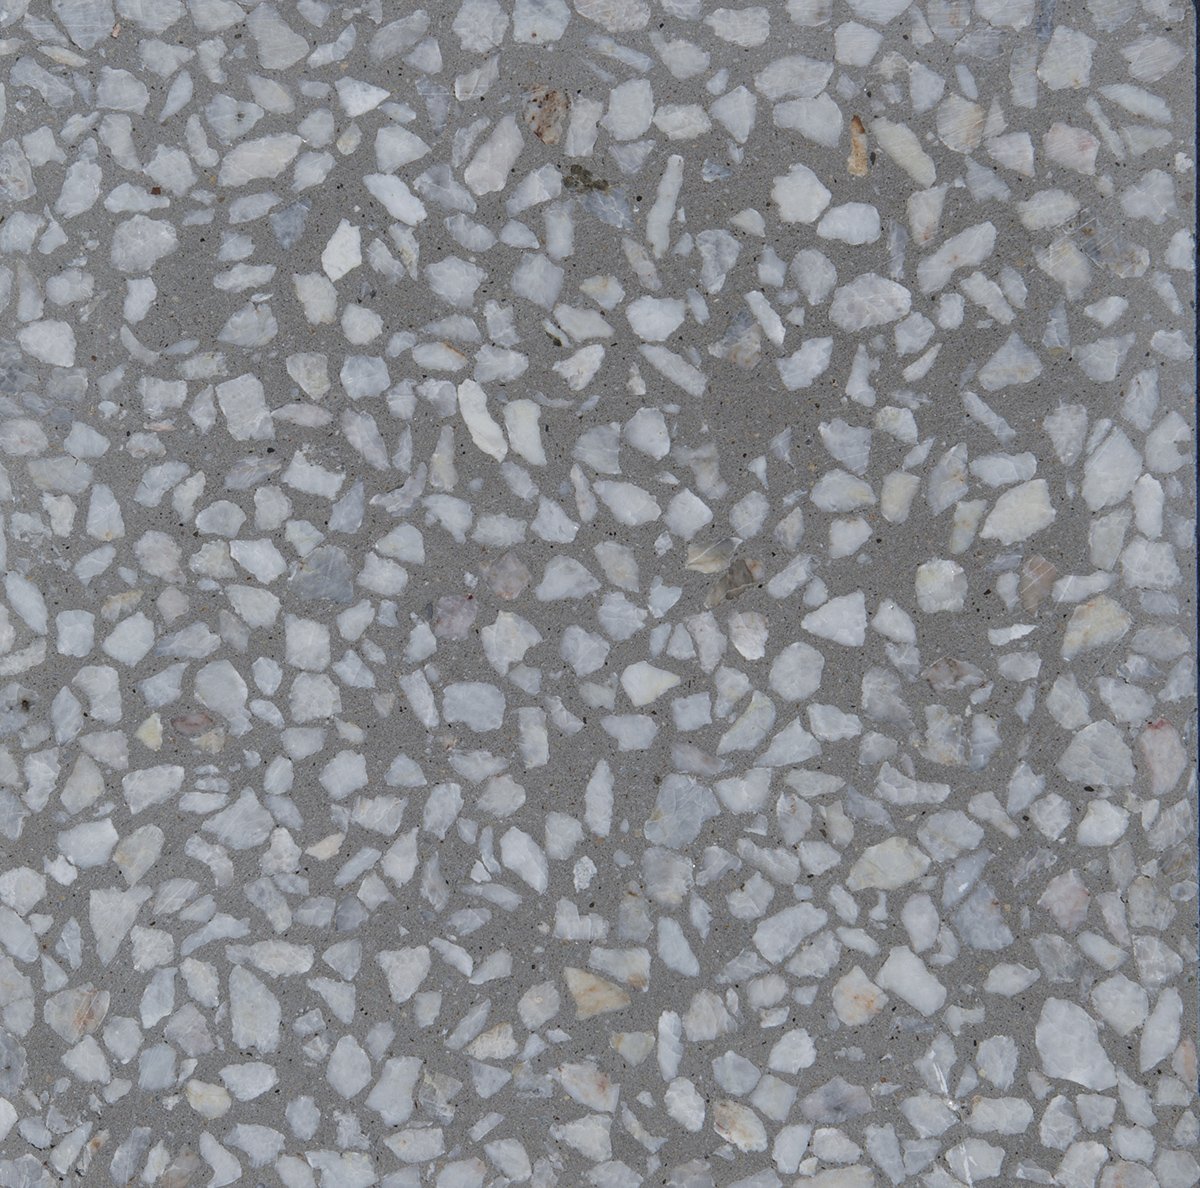 سنگ درشت سفید با زمینه خاکستری